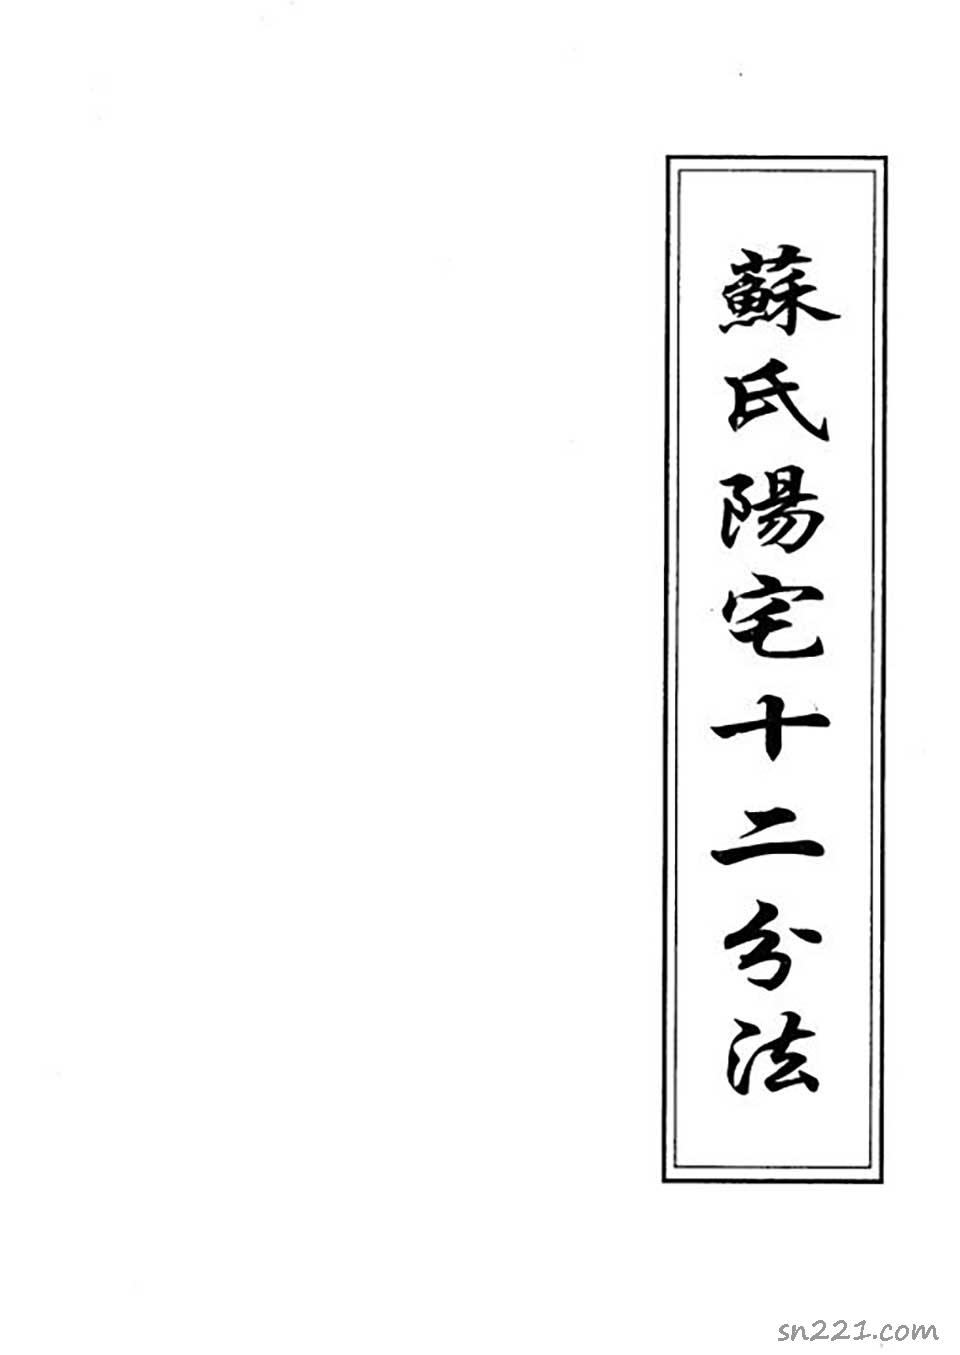 蘇方行-陽宅十二分法錯頁整理版111頁.pdf